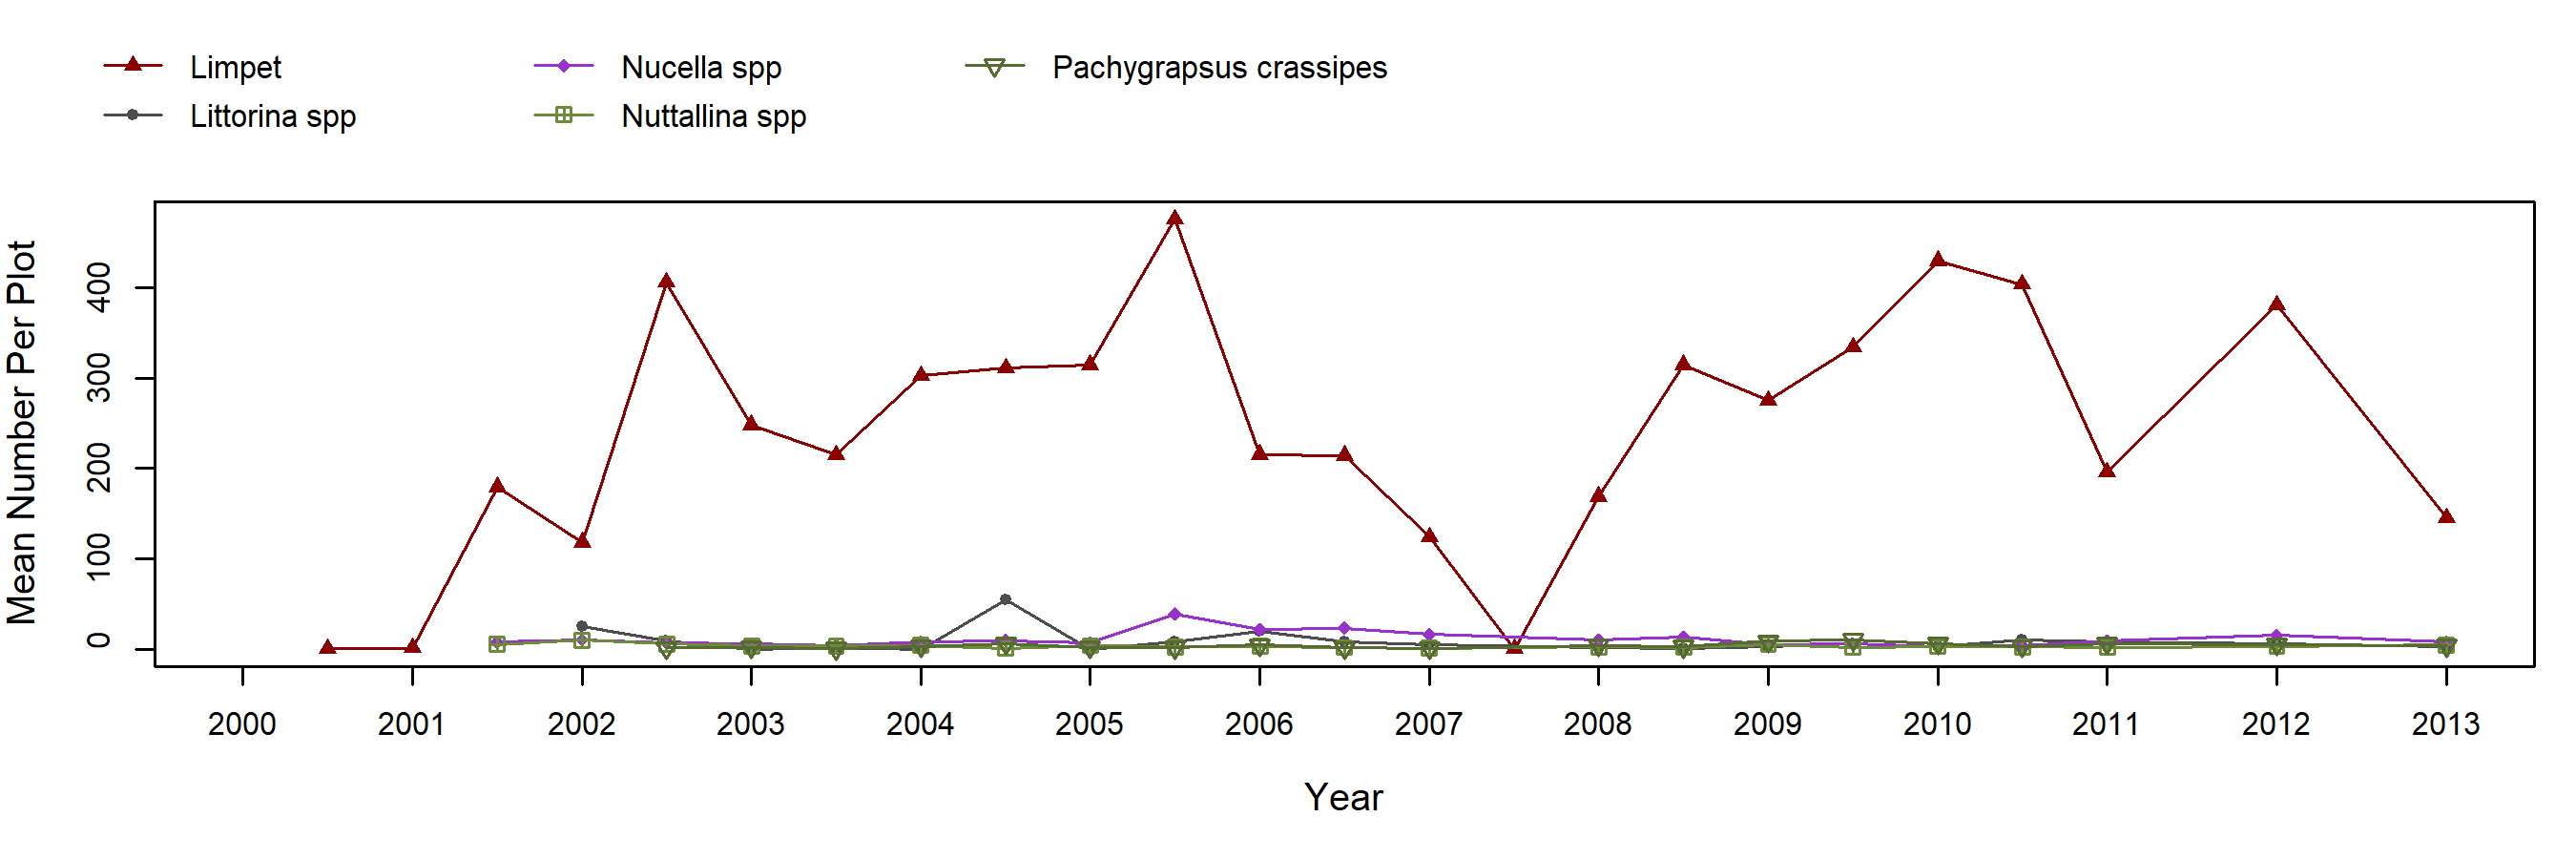 Occulto Mytilus trend plot